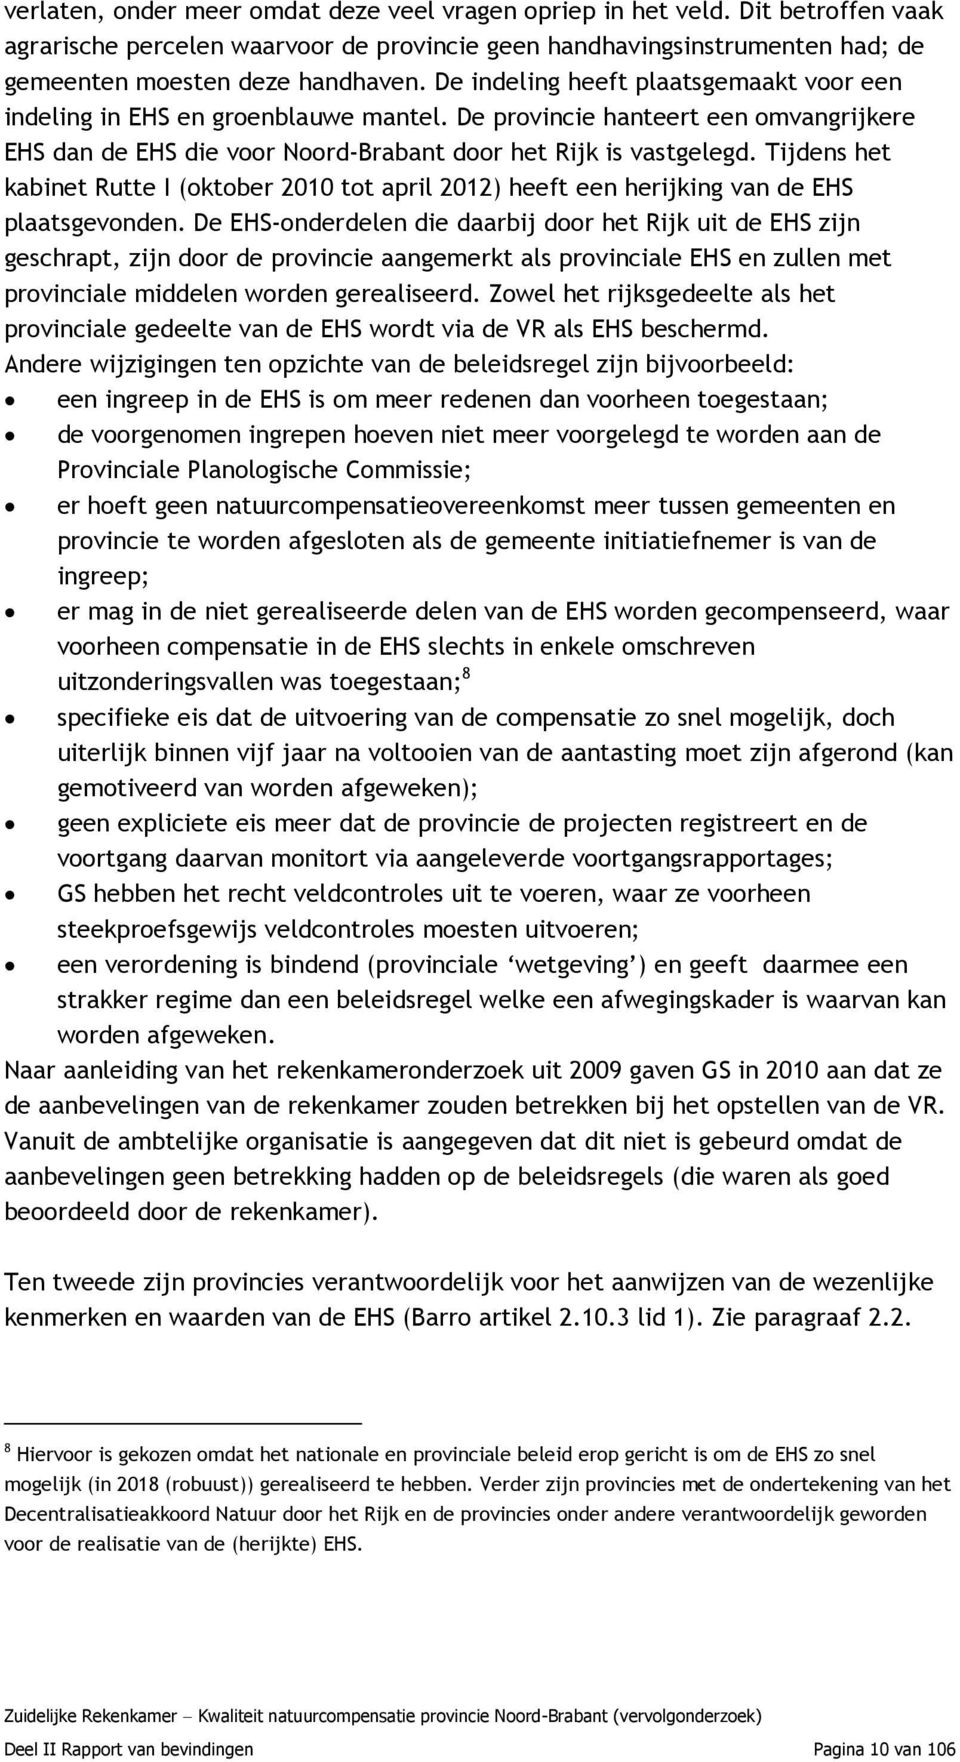 Tijdens het kabinet Rutte I (oktober 2010 tot april 2012) heeft een herijking van de EHS plaatsgevonden.